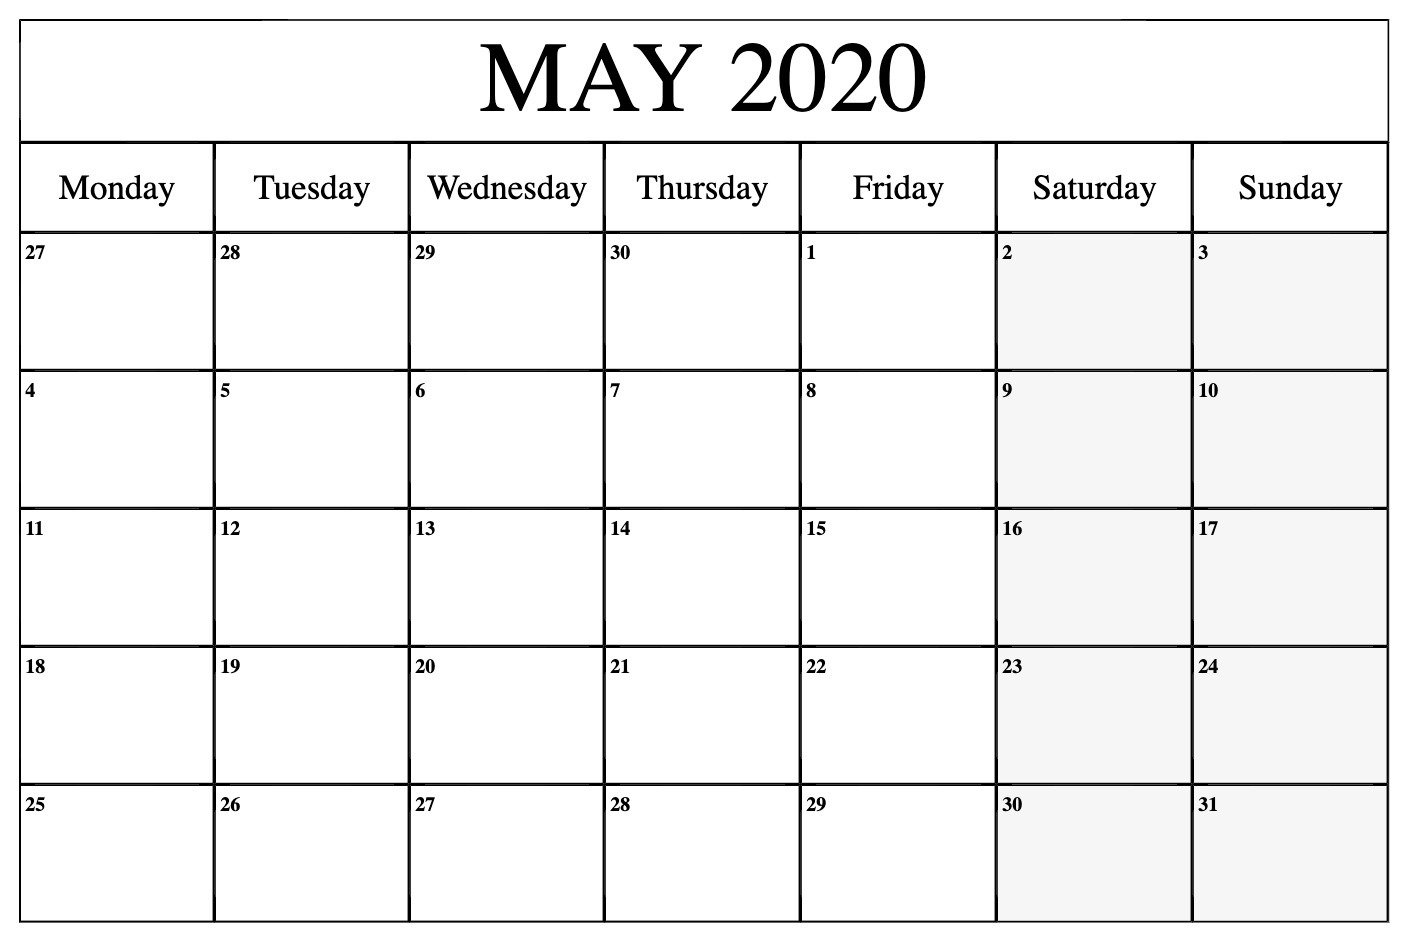 May 2020 Calendar